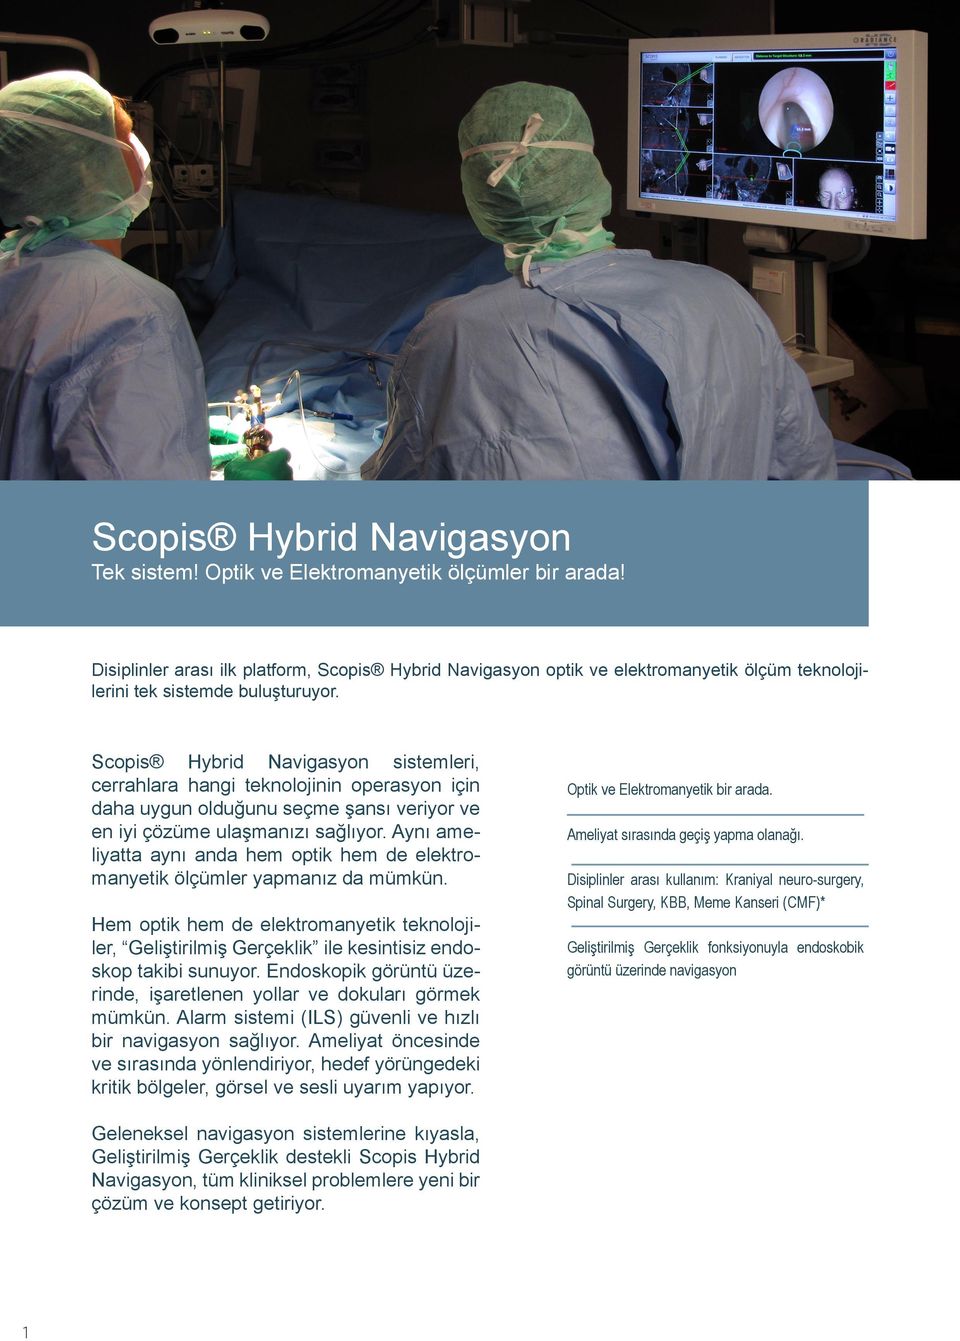 Scopis Hybrid Navigasyon sistemleri, cerrahlara hangi teknolojinin operasyon için daha uygun olduğunu seçme şansı veriyor ve en iyi çözüme ulaşmanızı sağlıyor.